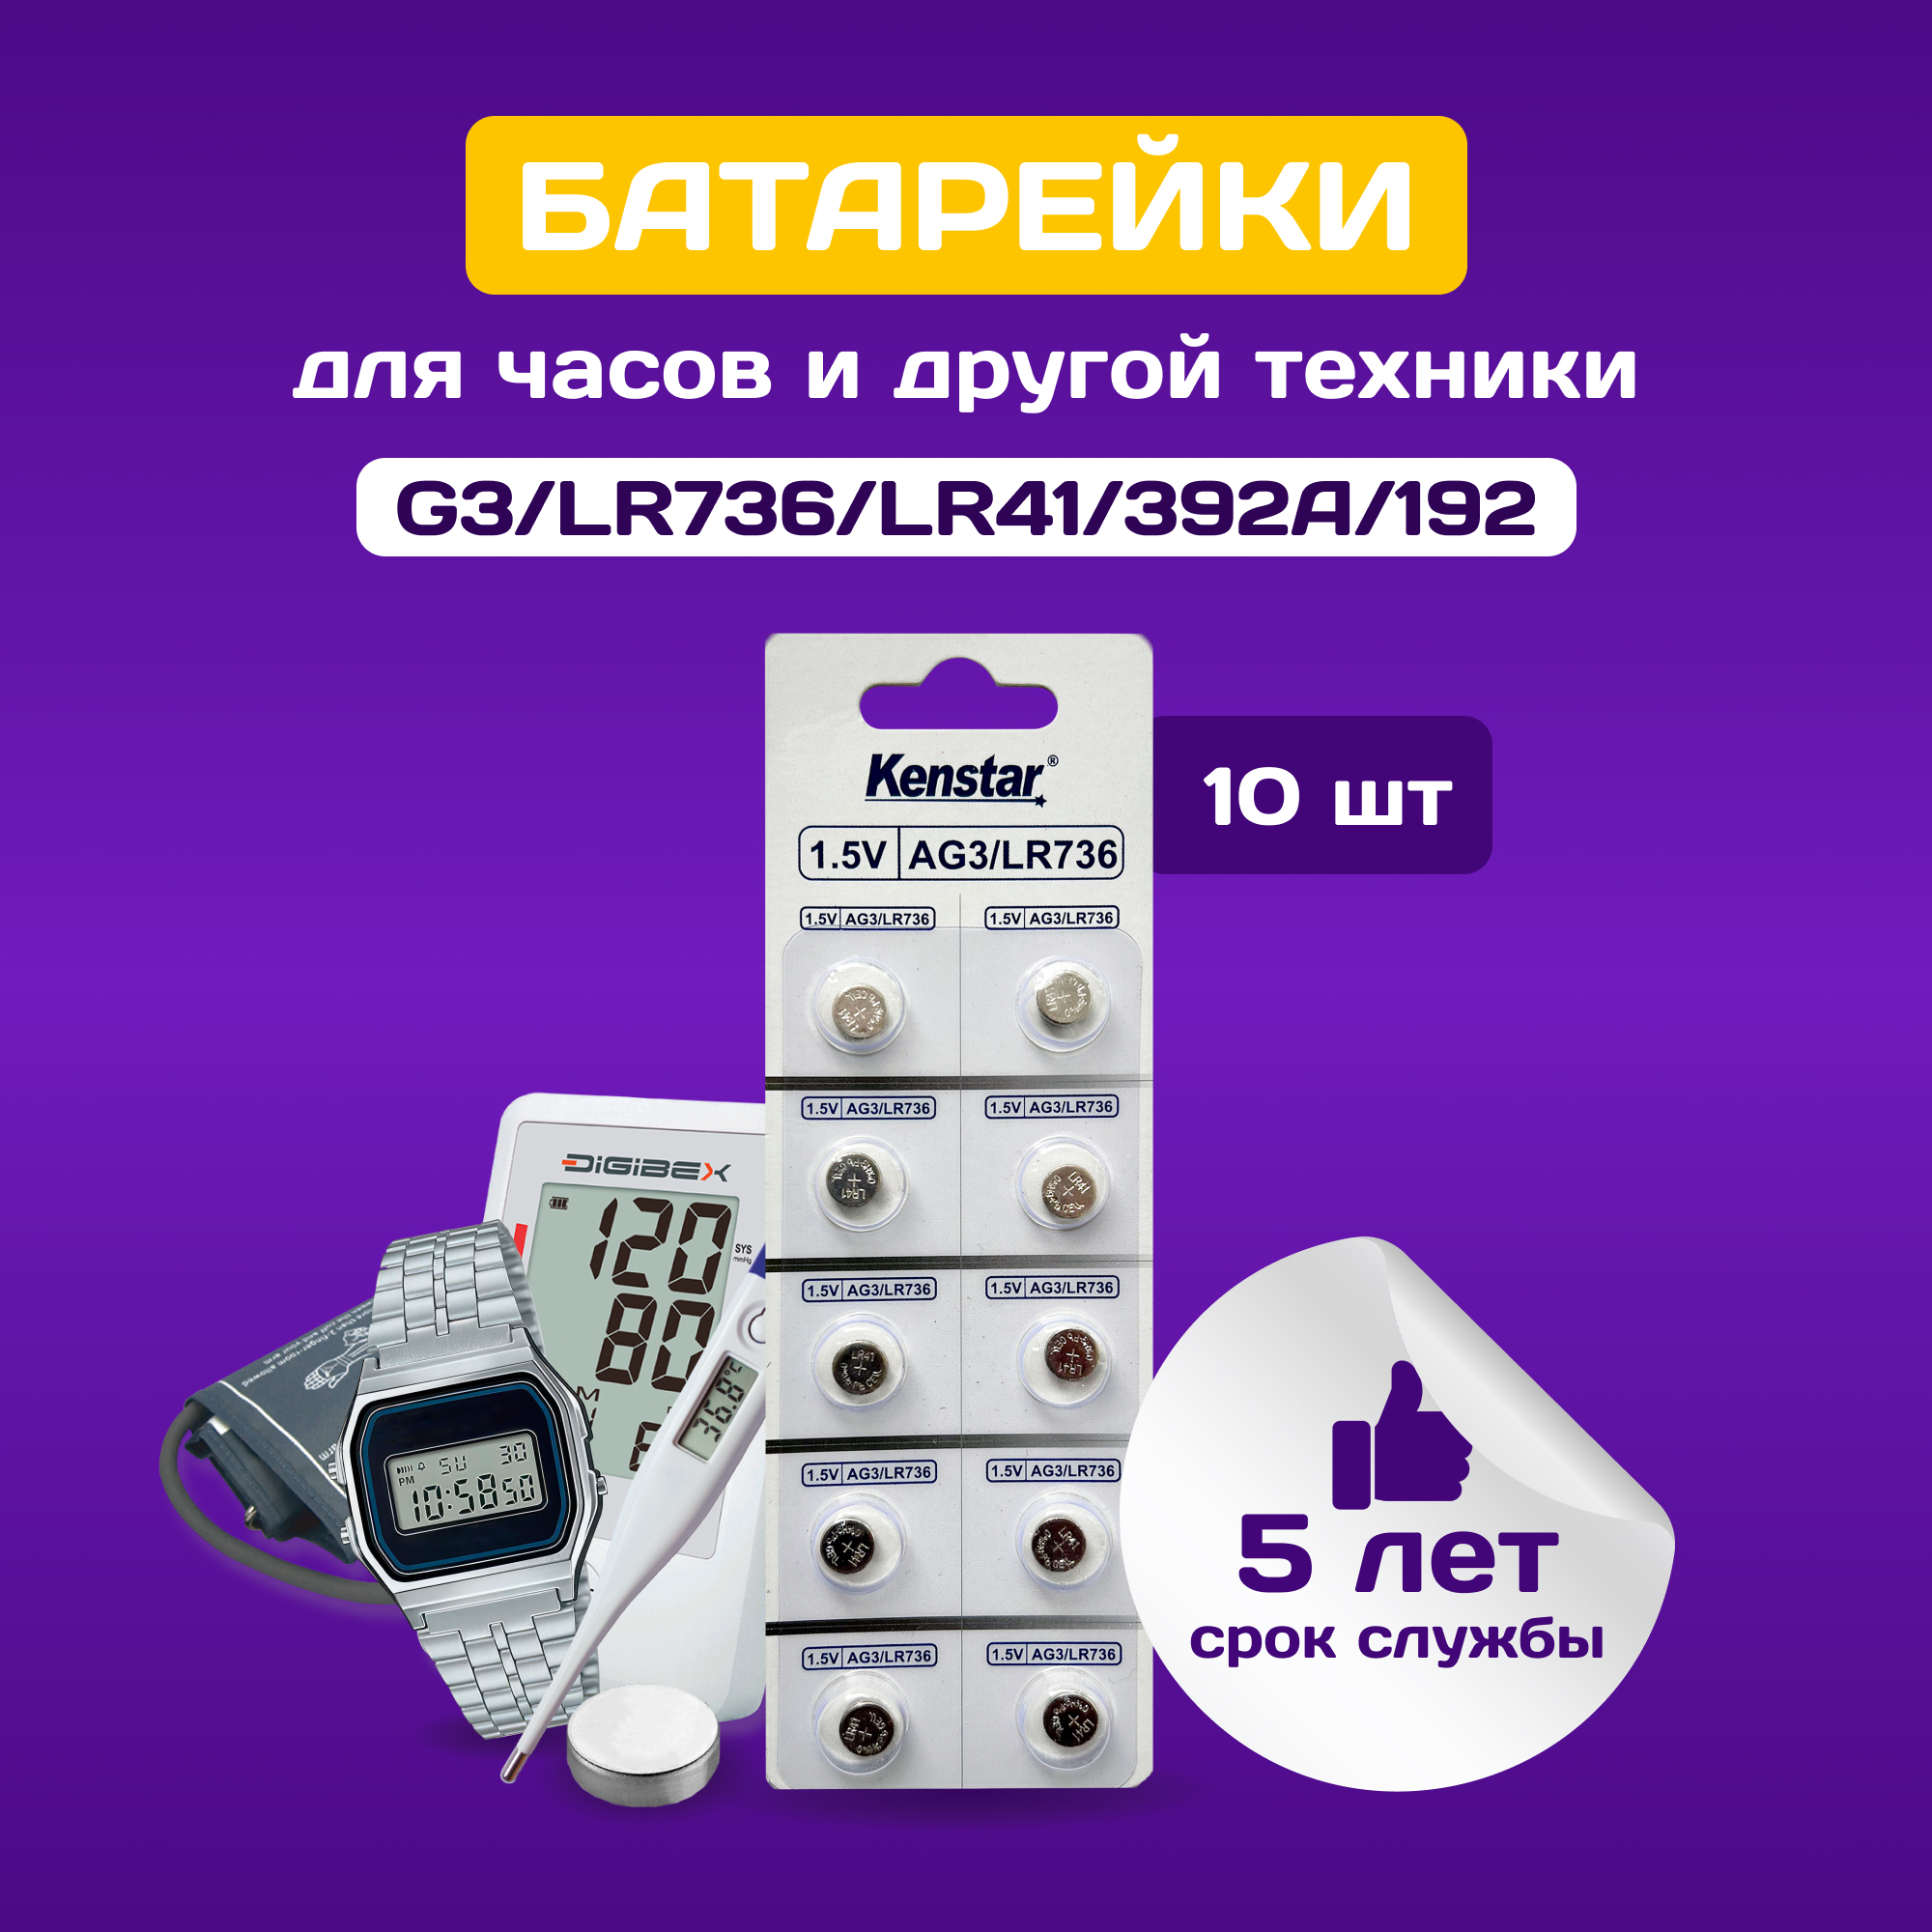 Батарейки алкалиновые (щелочные) часовые KenStar G3/LR736/LR41/392A/192 1.5V 10 шт.